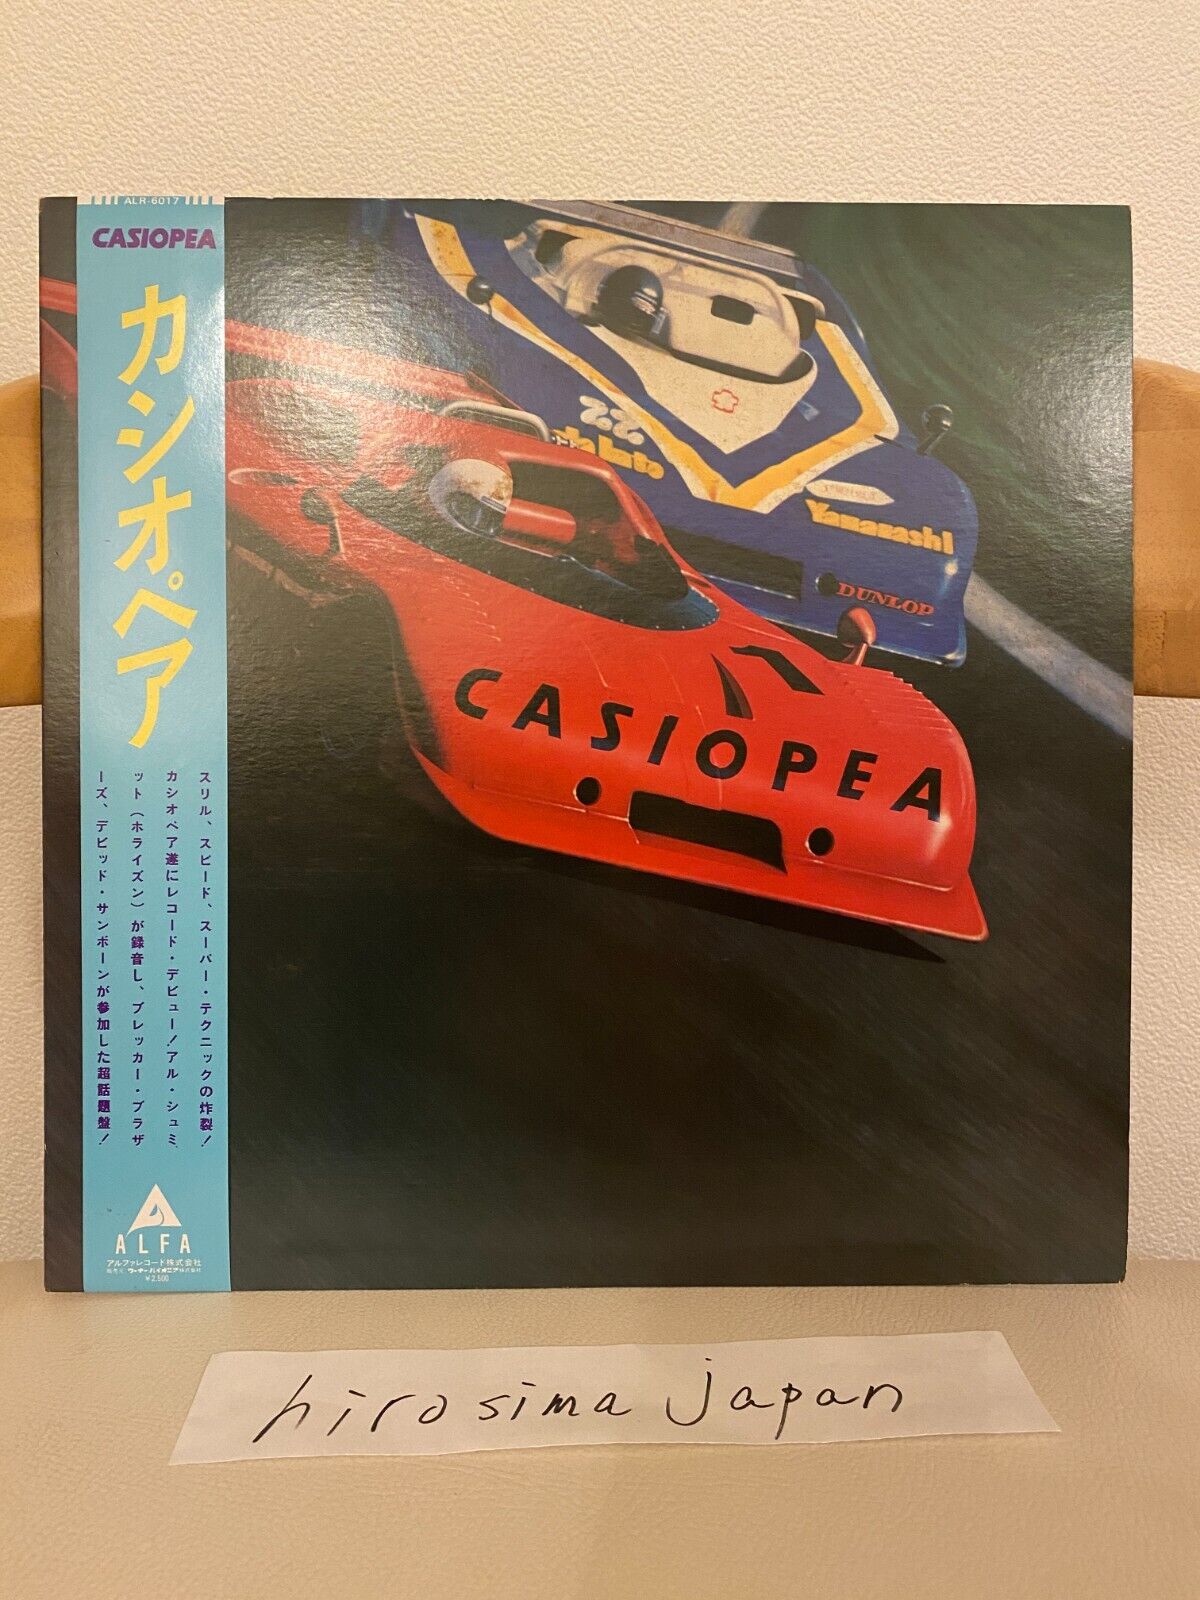 CASIOPEA ALR-6017 ALFA RECORDS Excellent JAPAN